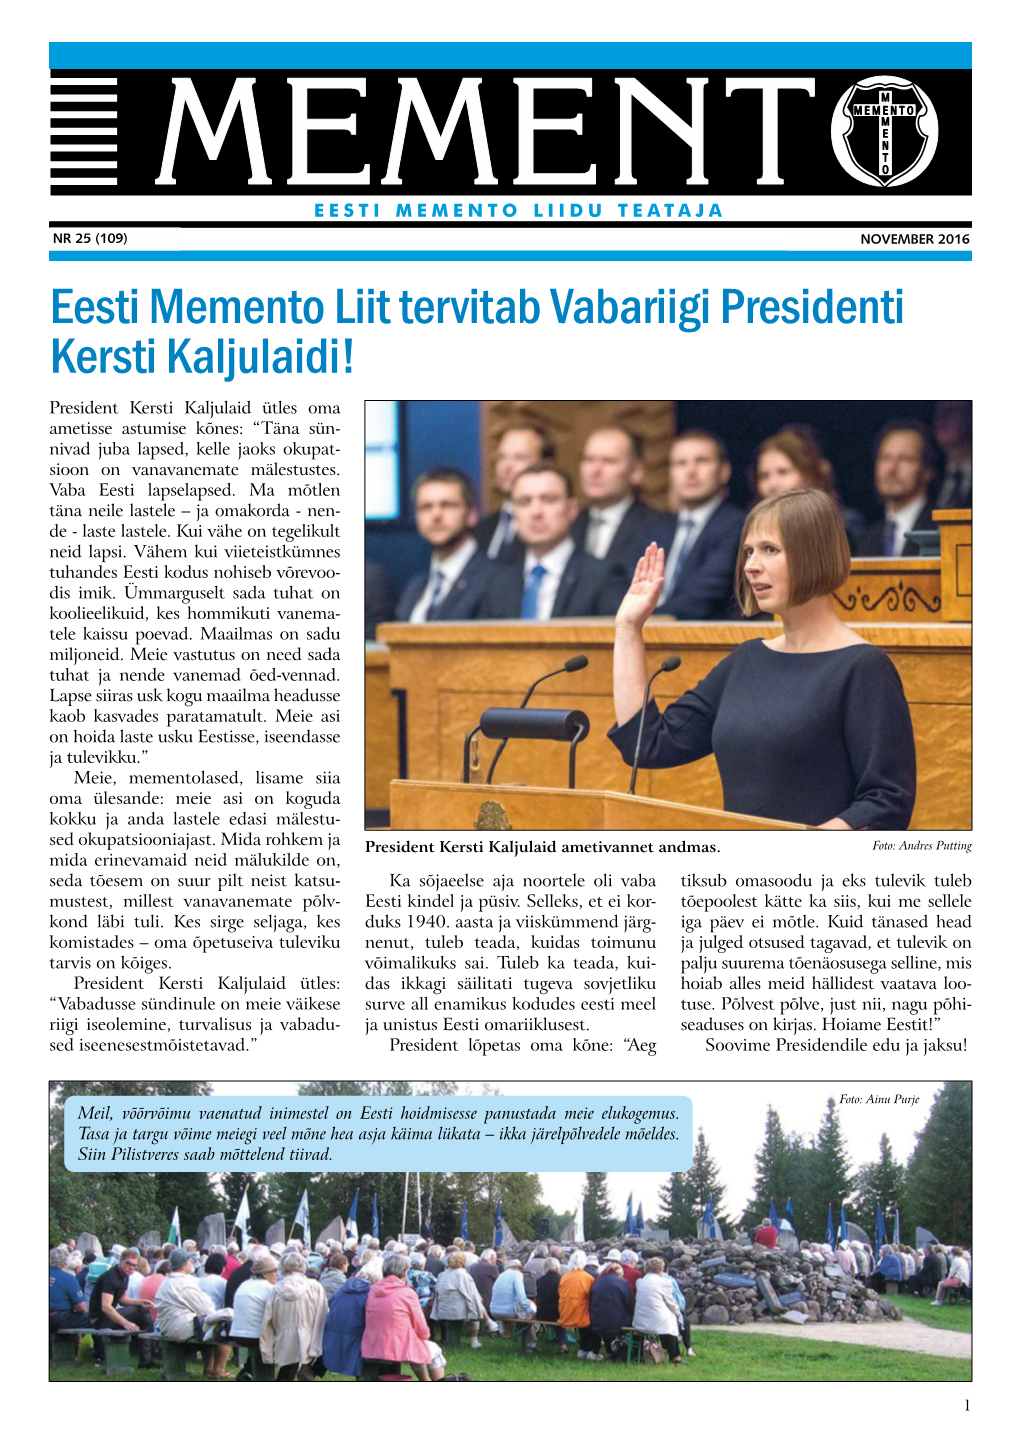 Eesti Memento Liit Tervitab Vabariigi Presidenti Kersti Kaljulaidi!